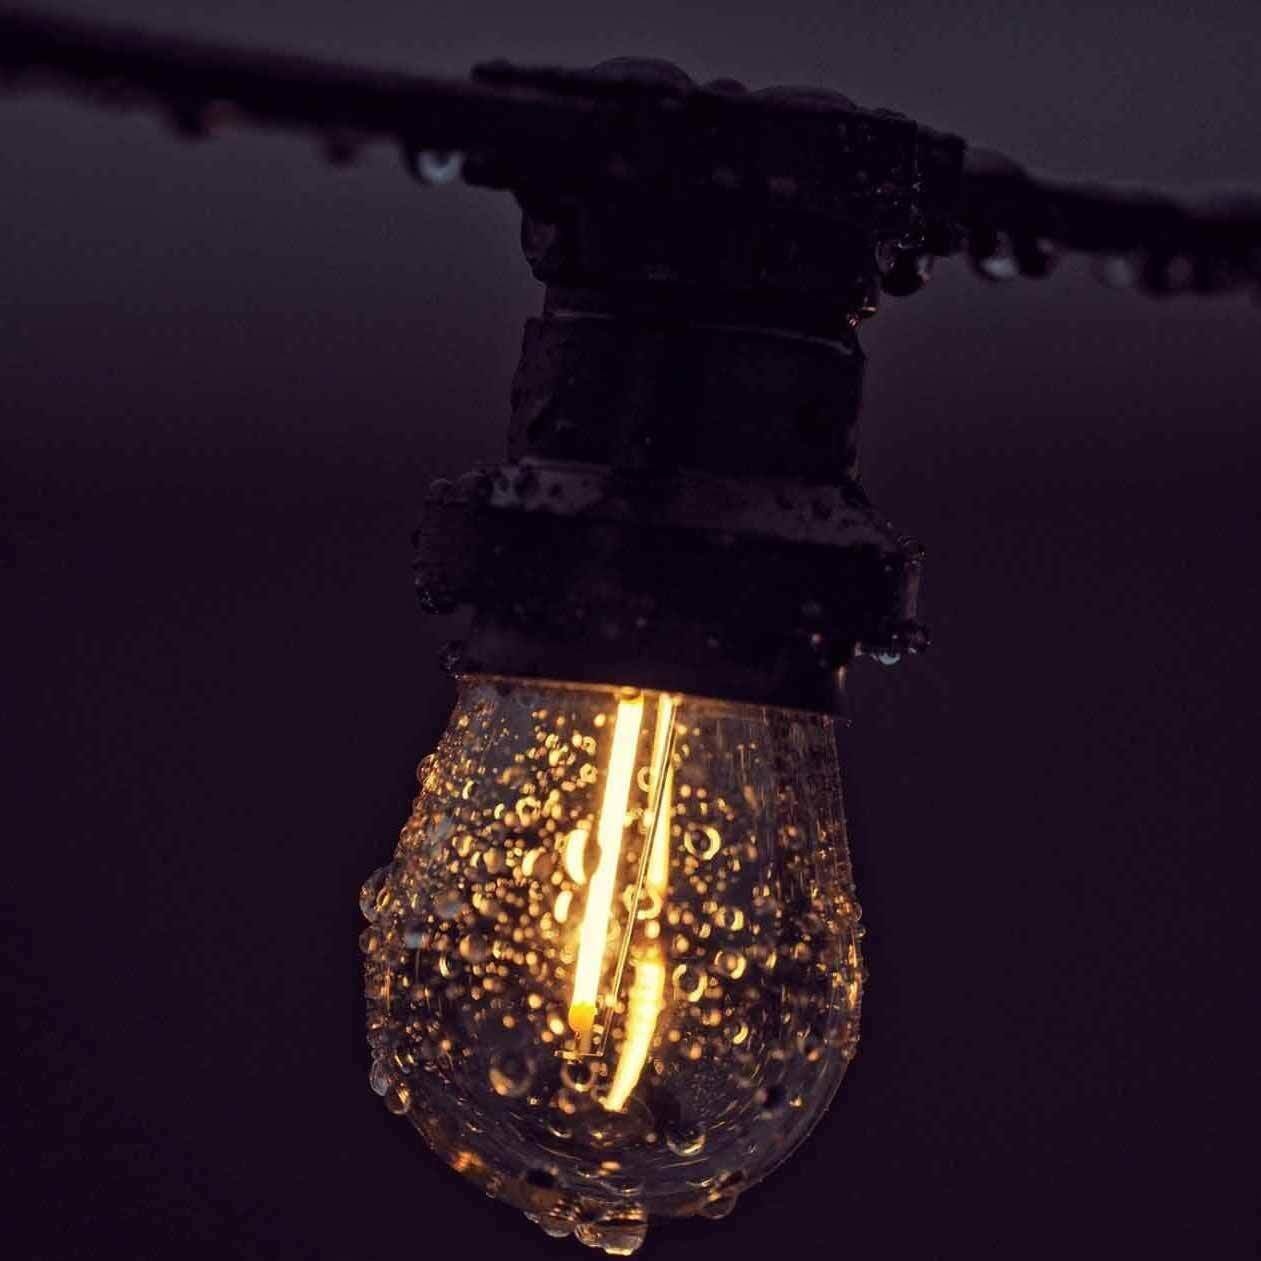 Sfeervol Licht met LED Filament Lampen - Bestel uw e27 lamp – Het LED  Warenhuis